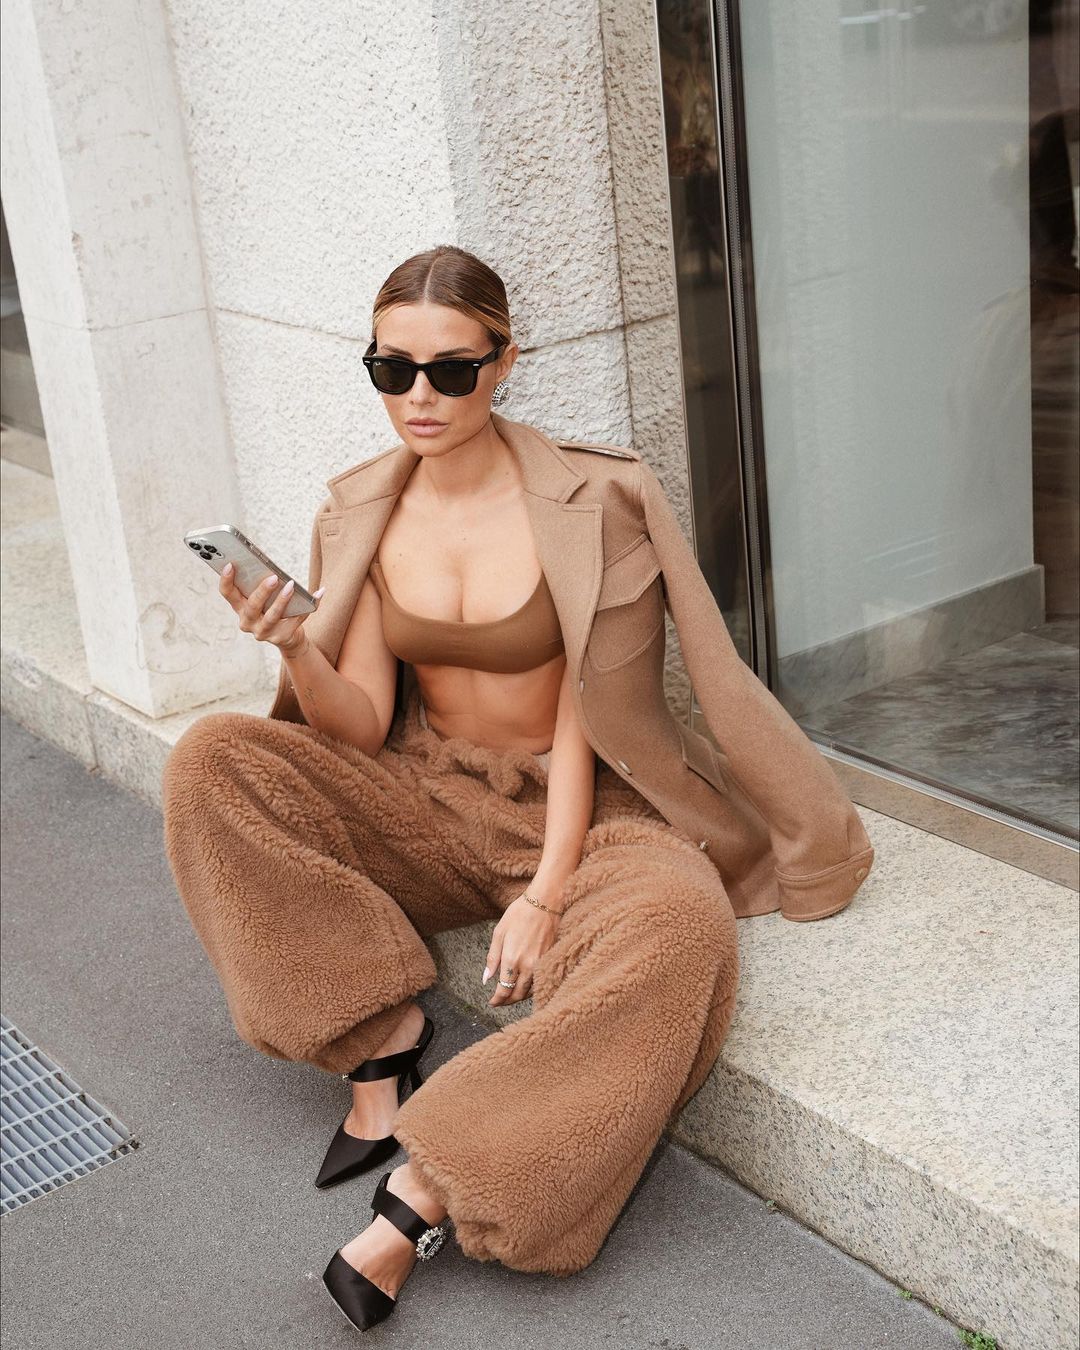 модний жакет піджак осінь 2022 як стильно носити Milan Fashion Week тиждень моди мілан стрітстайл